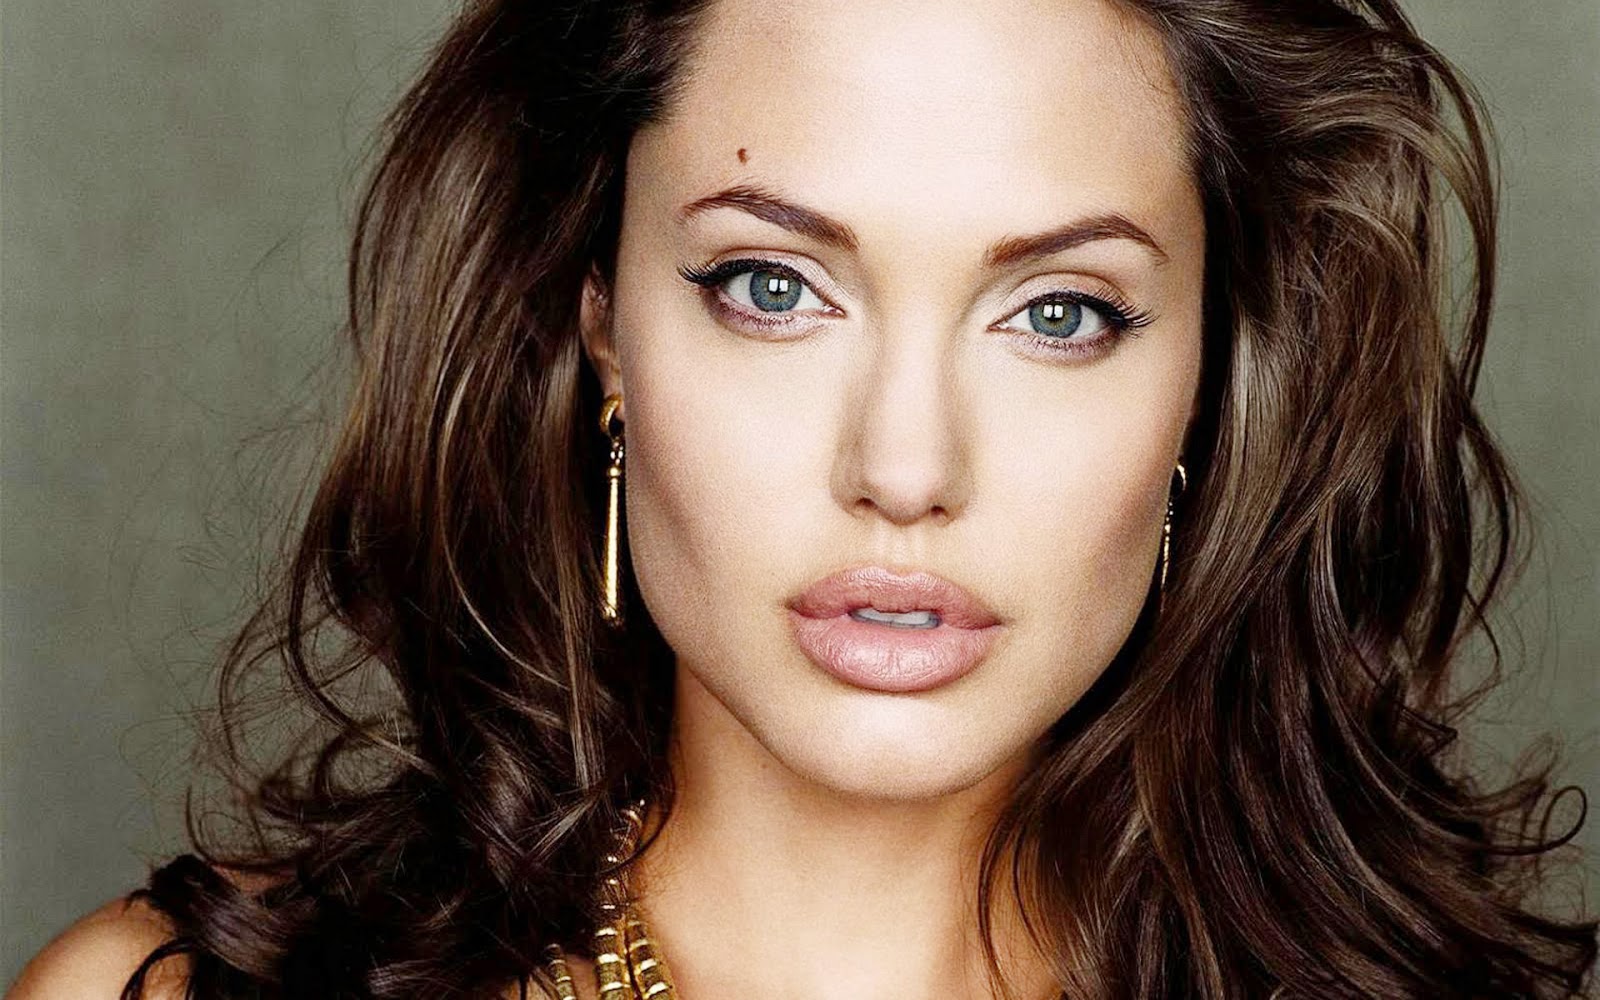  ‘Estados Unidos está construido con personas de todo el mundo unidas por la libertad’: Angelina Jolie a Donald Trump